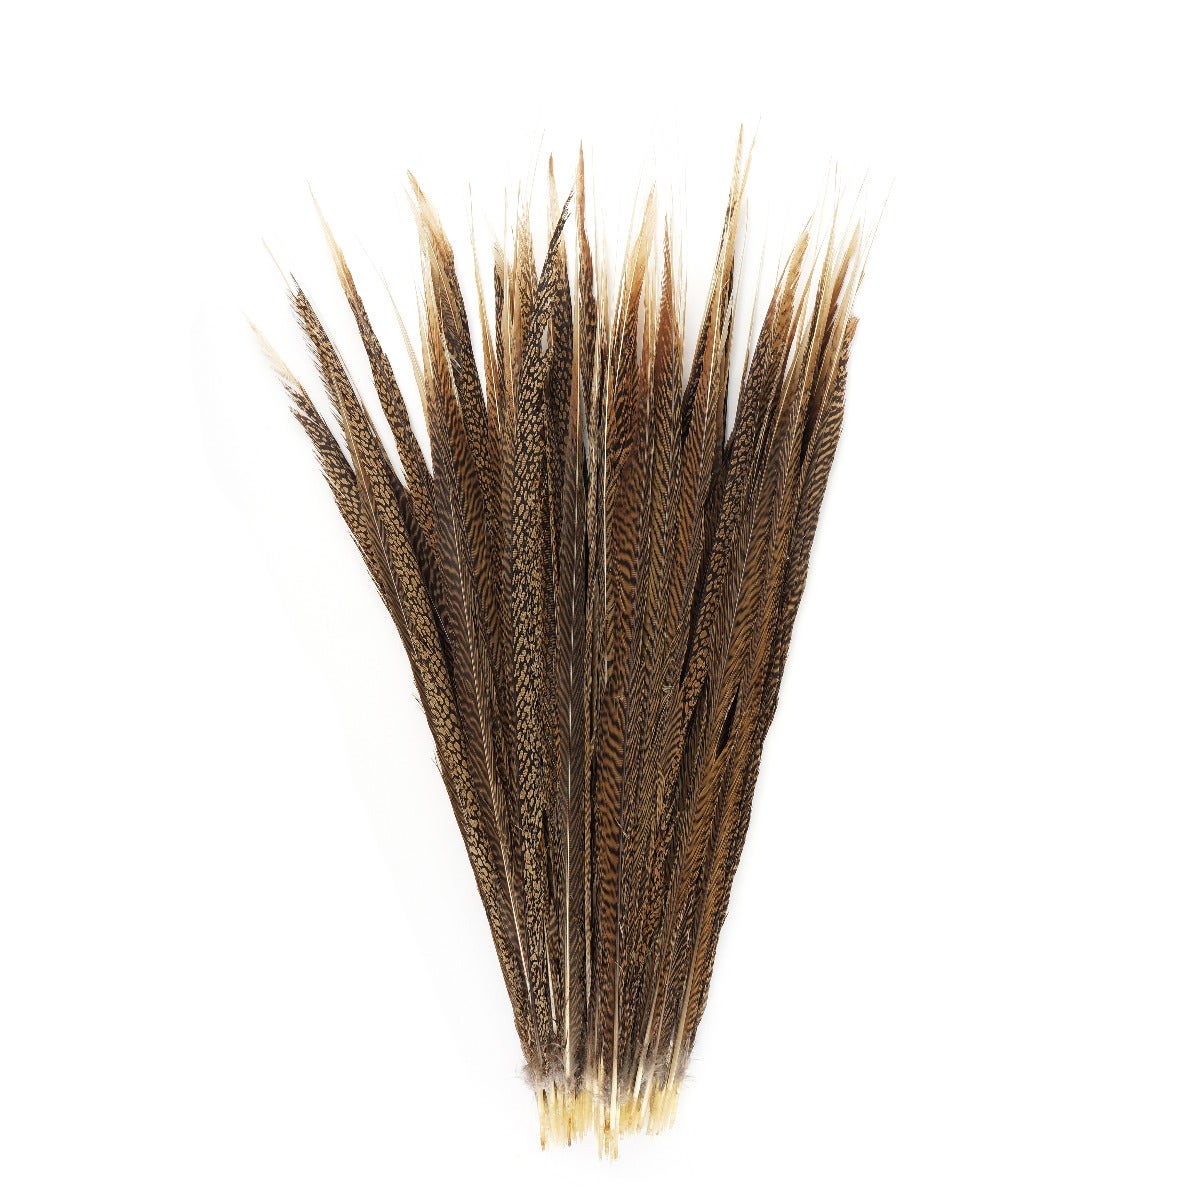 3 PC/PKG  Golden Pheasant Tails  20-25" - Natural